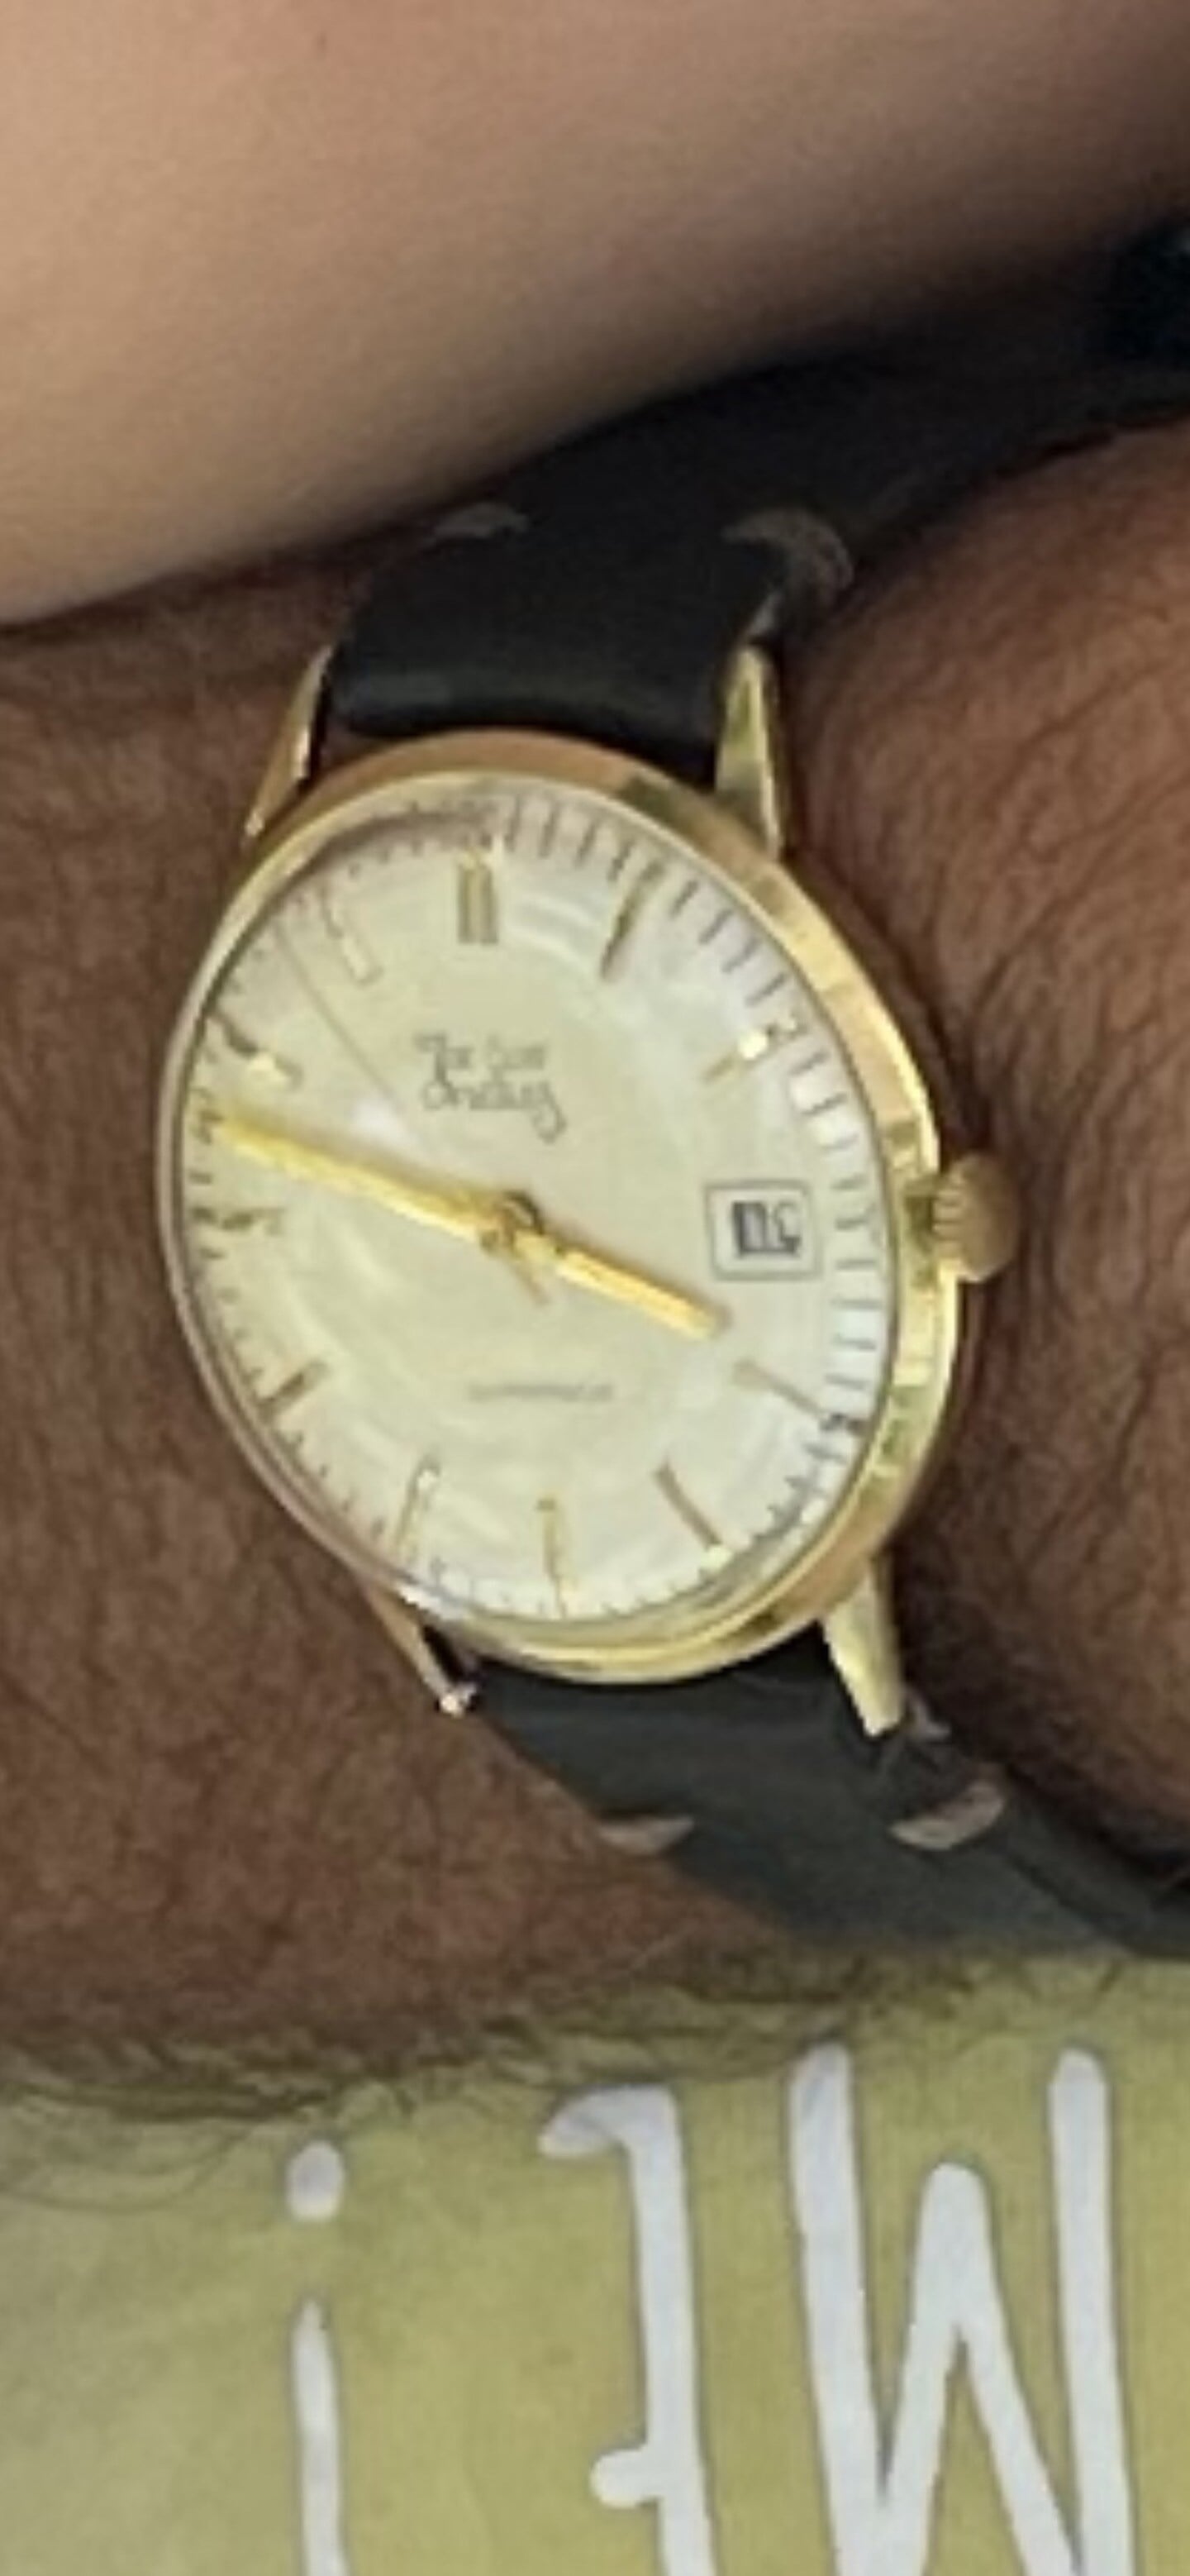 Het verloren horloge met het laatste horlogebandje dat erom zat.